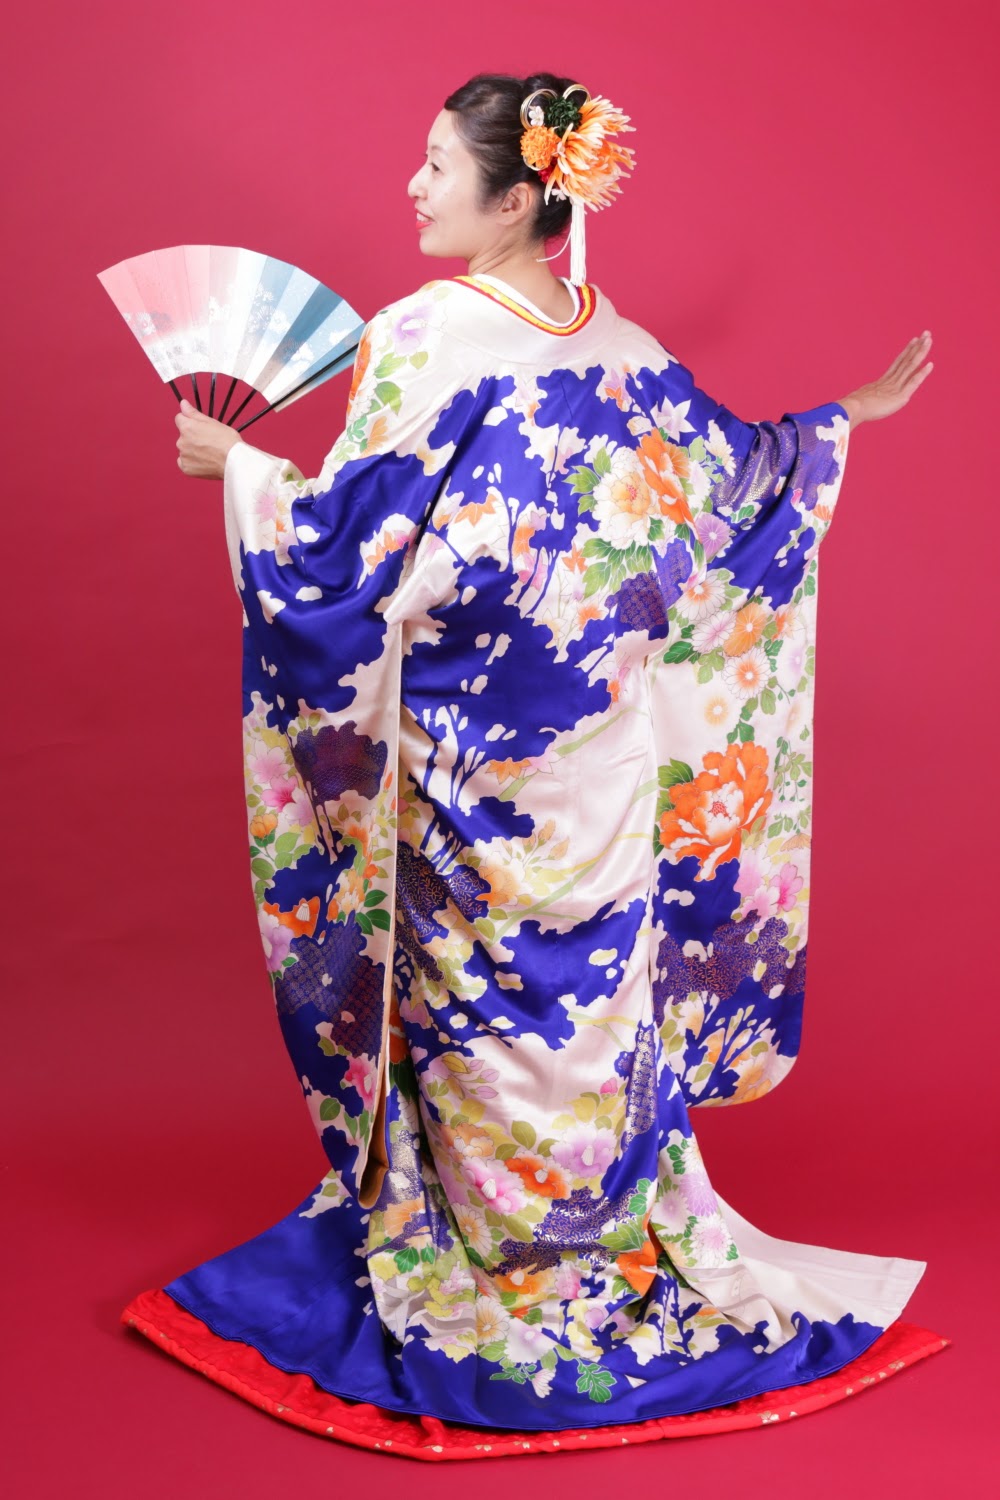 Hình kimono đẹp